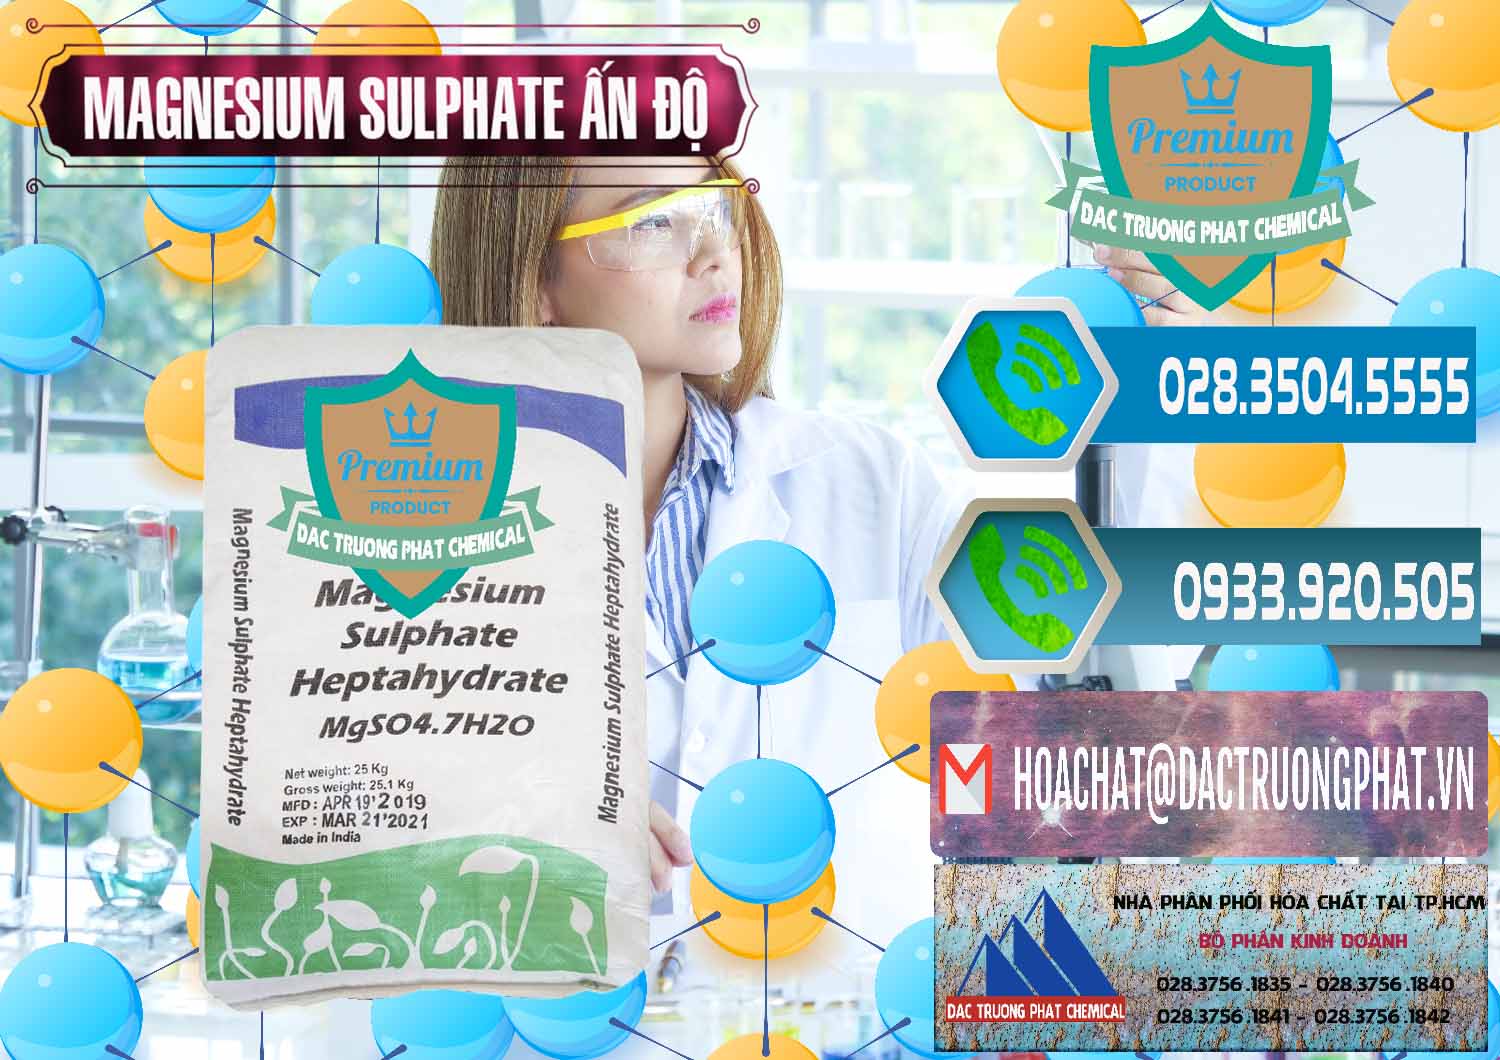 Kinh doanh & bán MGSO4.7H2O – Magnesium Sulphate Heptahydrate Ấn Độ India - 0362 - Công ty phân phối và nhập khẩu hóa chất tại TP.HCM - congtyhoachat.net